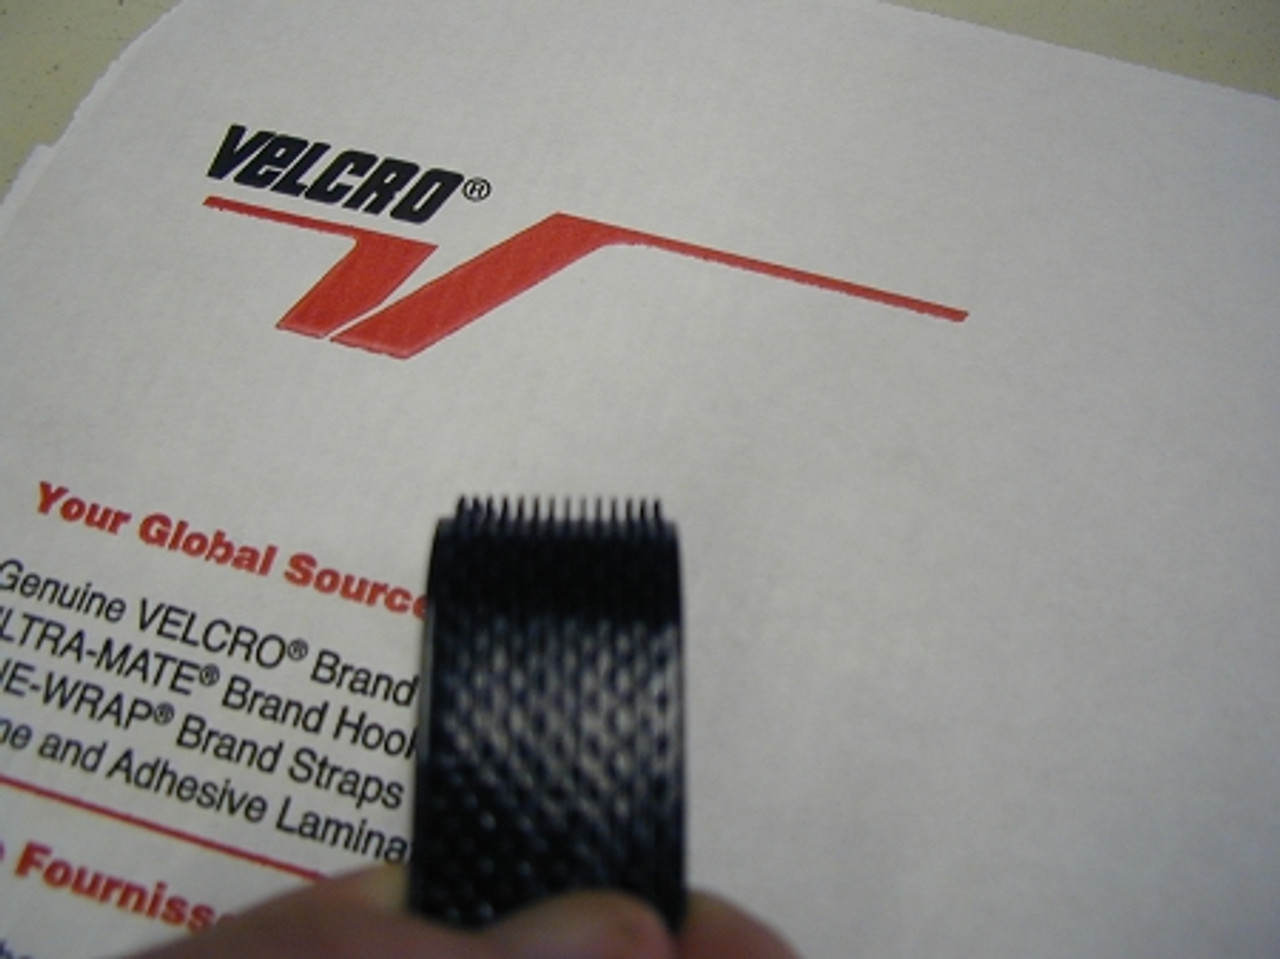 Velcro MVA8 Industrial Grade 25mm 1 inch